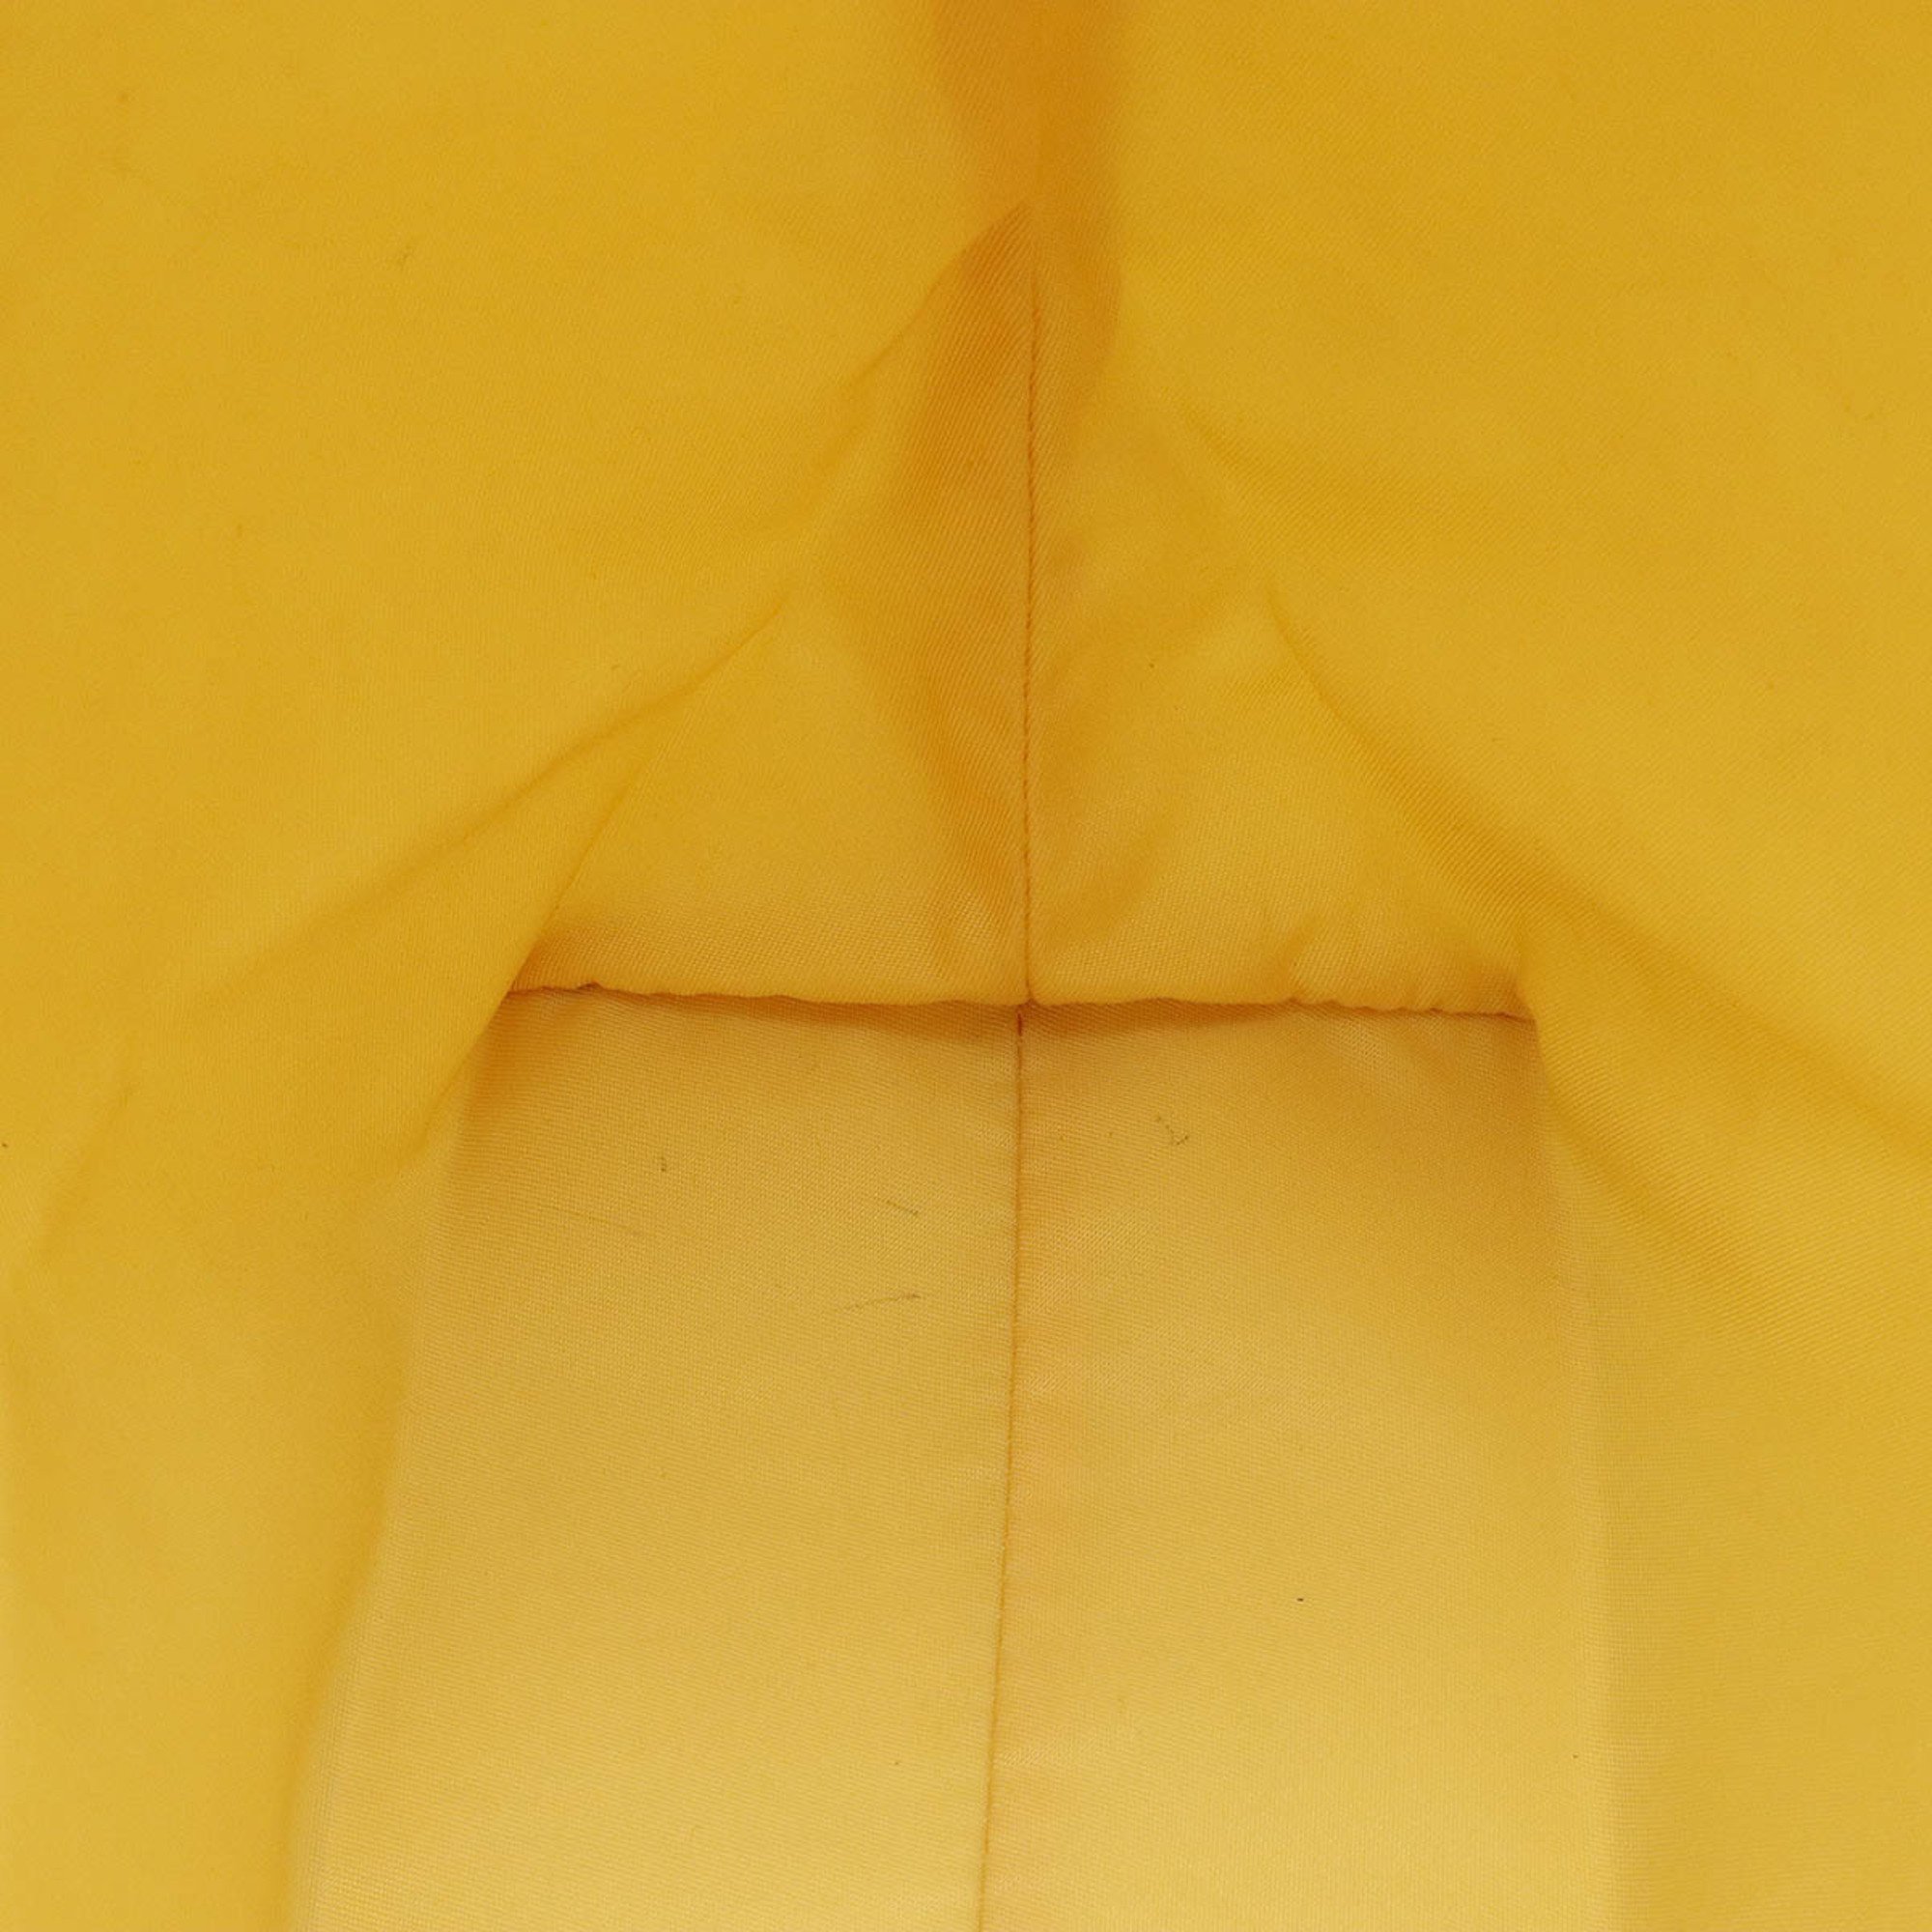 BOTTEGA VENETA Bottega Veneta Intreccio Lusion Tote Bag Handbag Nylon Leather Yellow